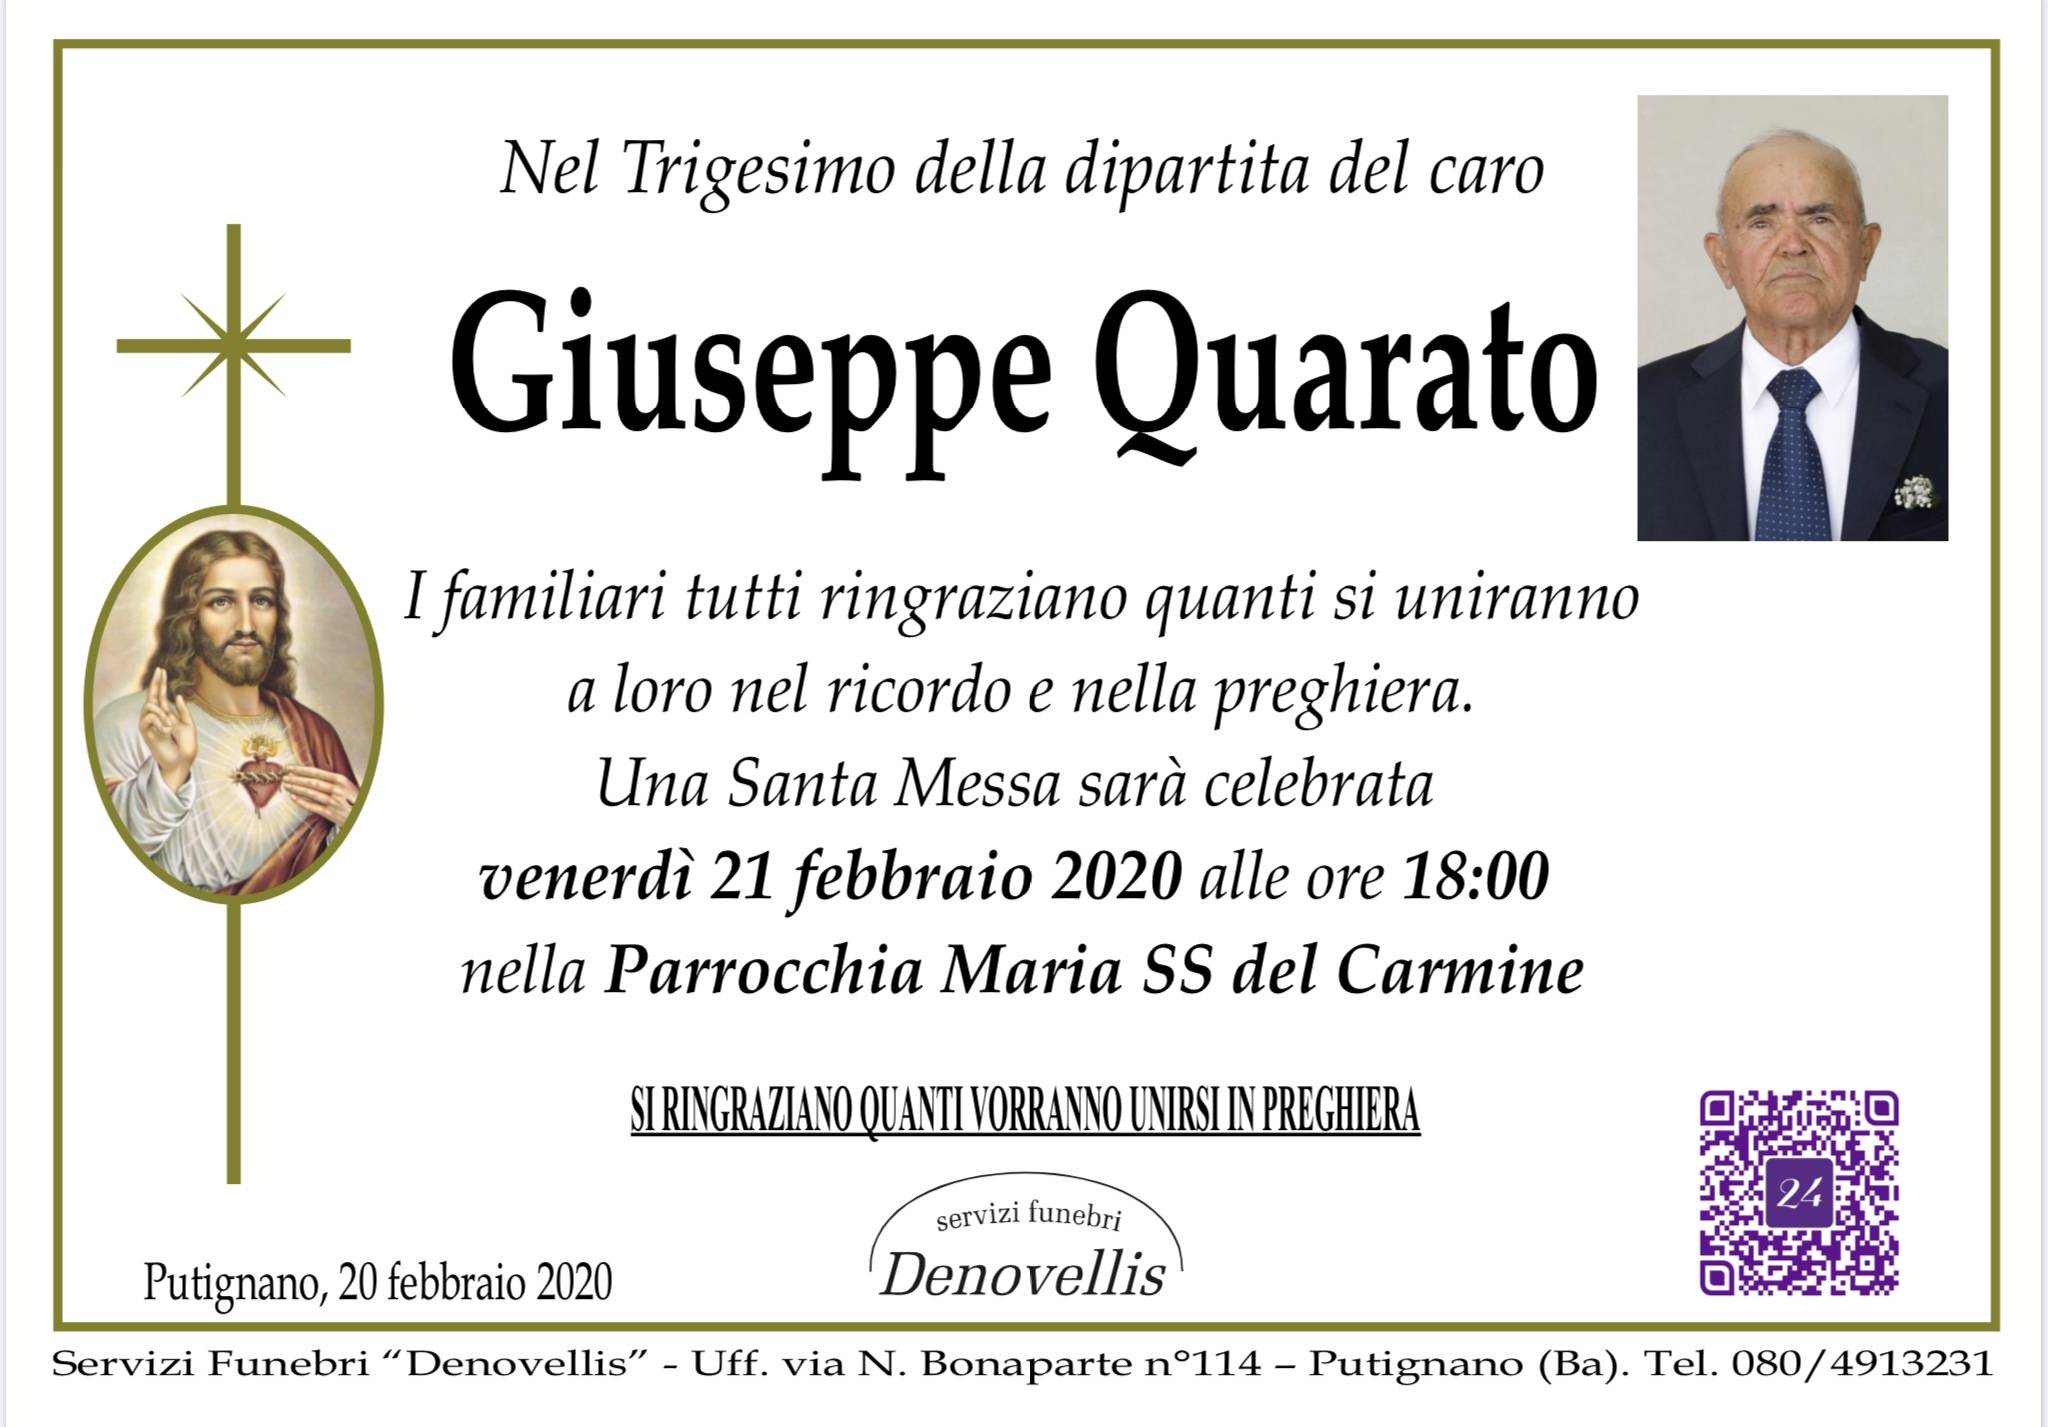 Giuseppe Quarato